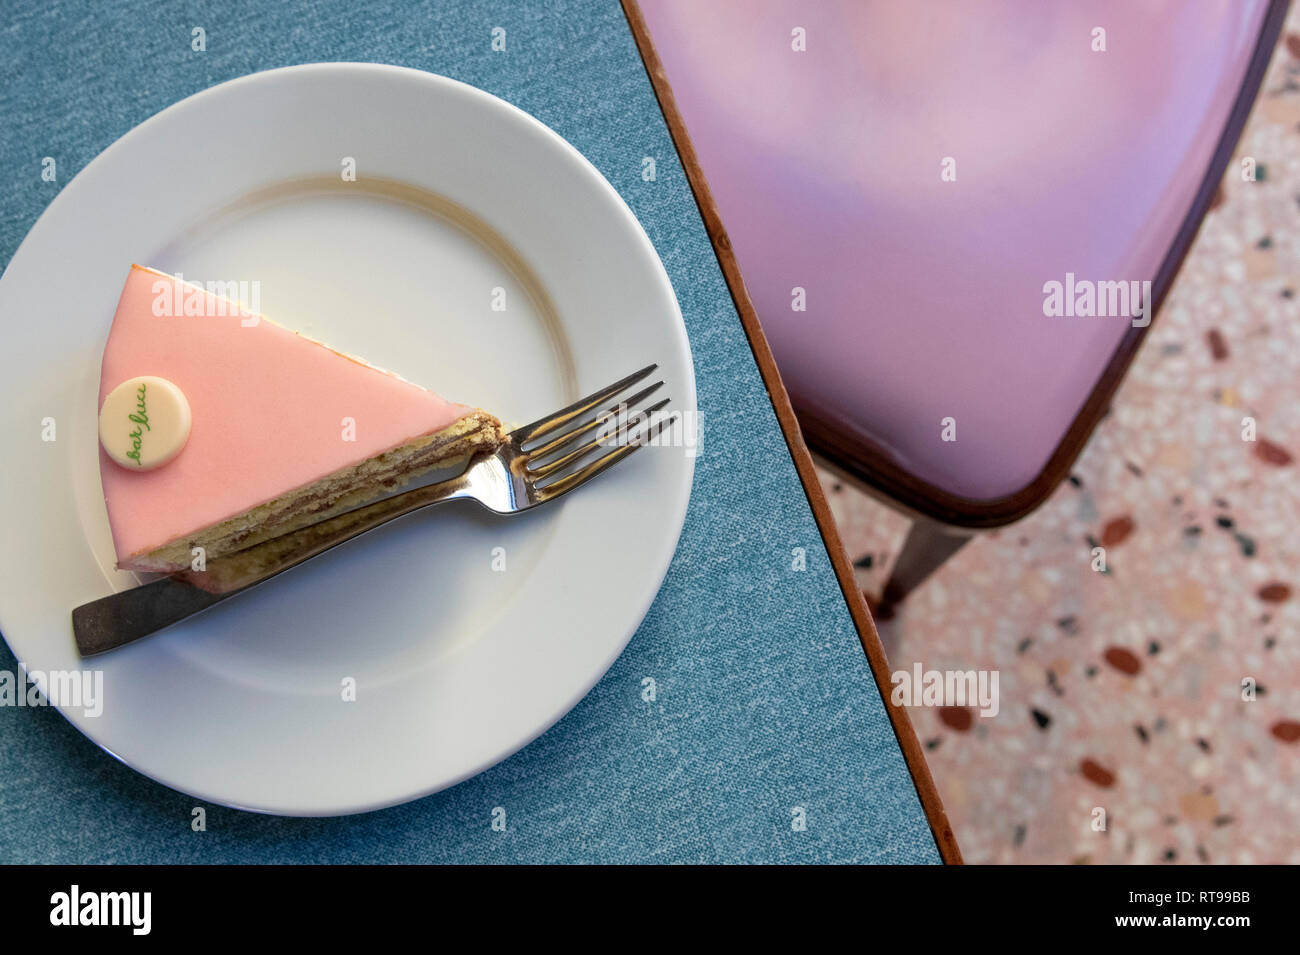 Une tranche de la Torta Rosa pastel et au mobilier Bar Luce, Wes Anderson-inspiré de bar et café à la Fondazione Prada de Milan, Italie Banque D'Images